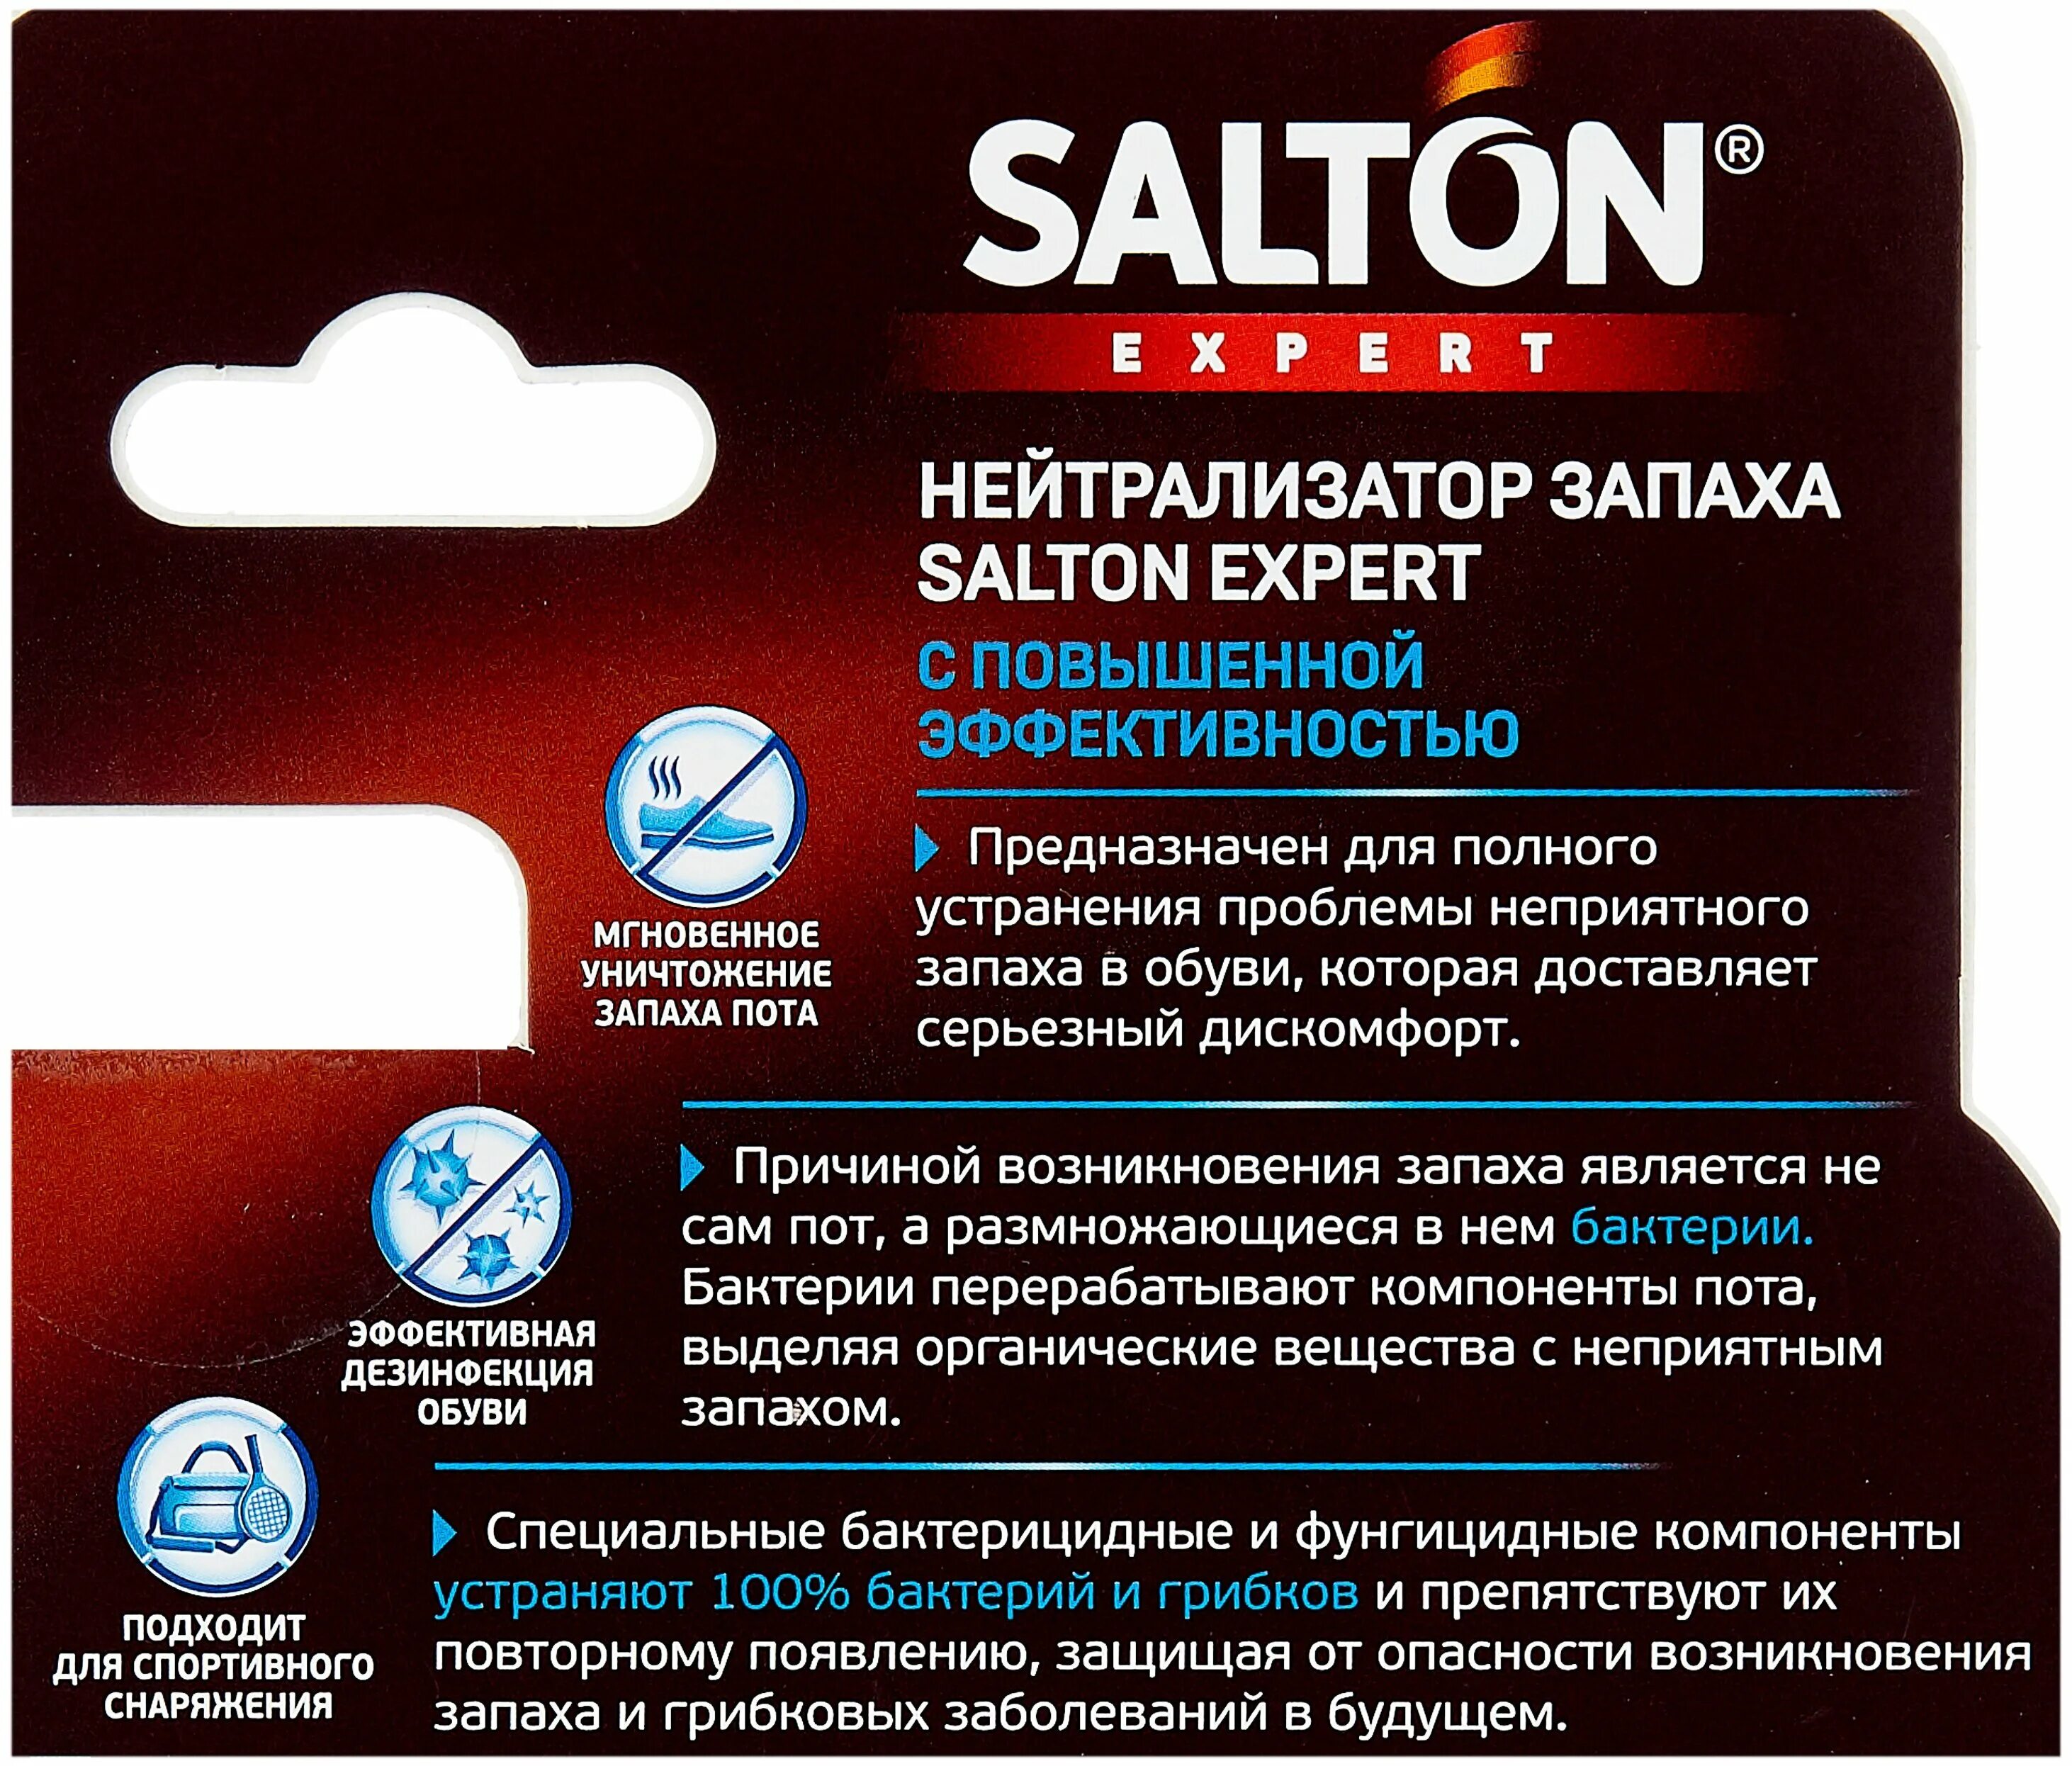 Salton нейтрализатор запаха. Salton Expert нейтрализатор запаха в обуви. ### Salton Exp. Нейтрализатор запаха в обуви повышенной эффективности 75мл. Salton Exp нейтрализатор запаха в обуви повышенной эффективности 75 мл (16).